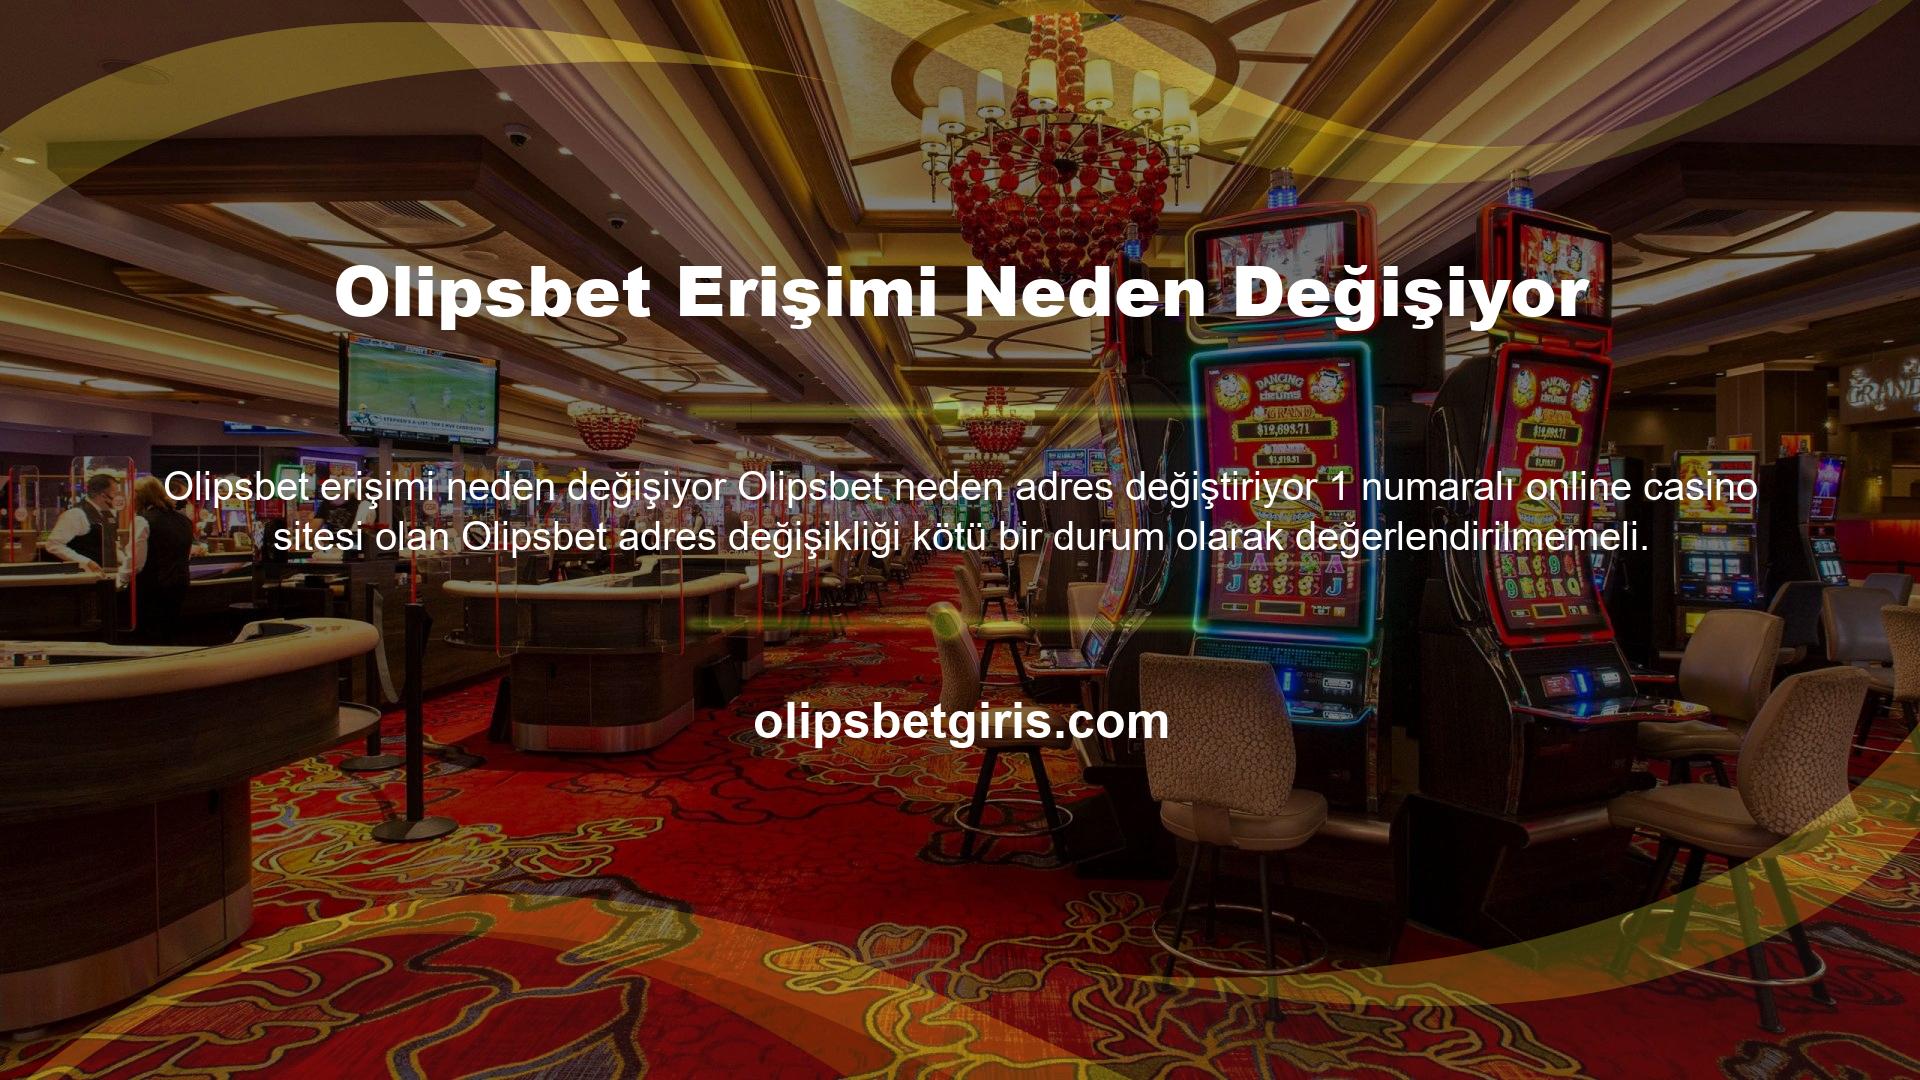 Türkiye casino siteleri üzerinde bir miktar kontrole sahip olduğundan, bu sitelere erişim genellikle engellenmektedir